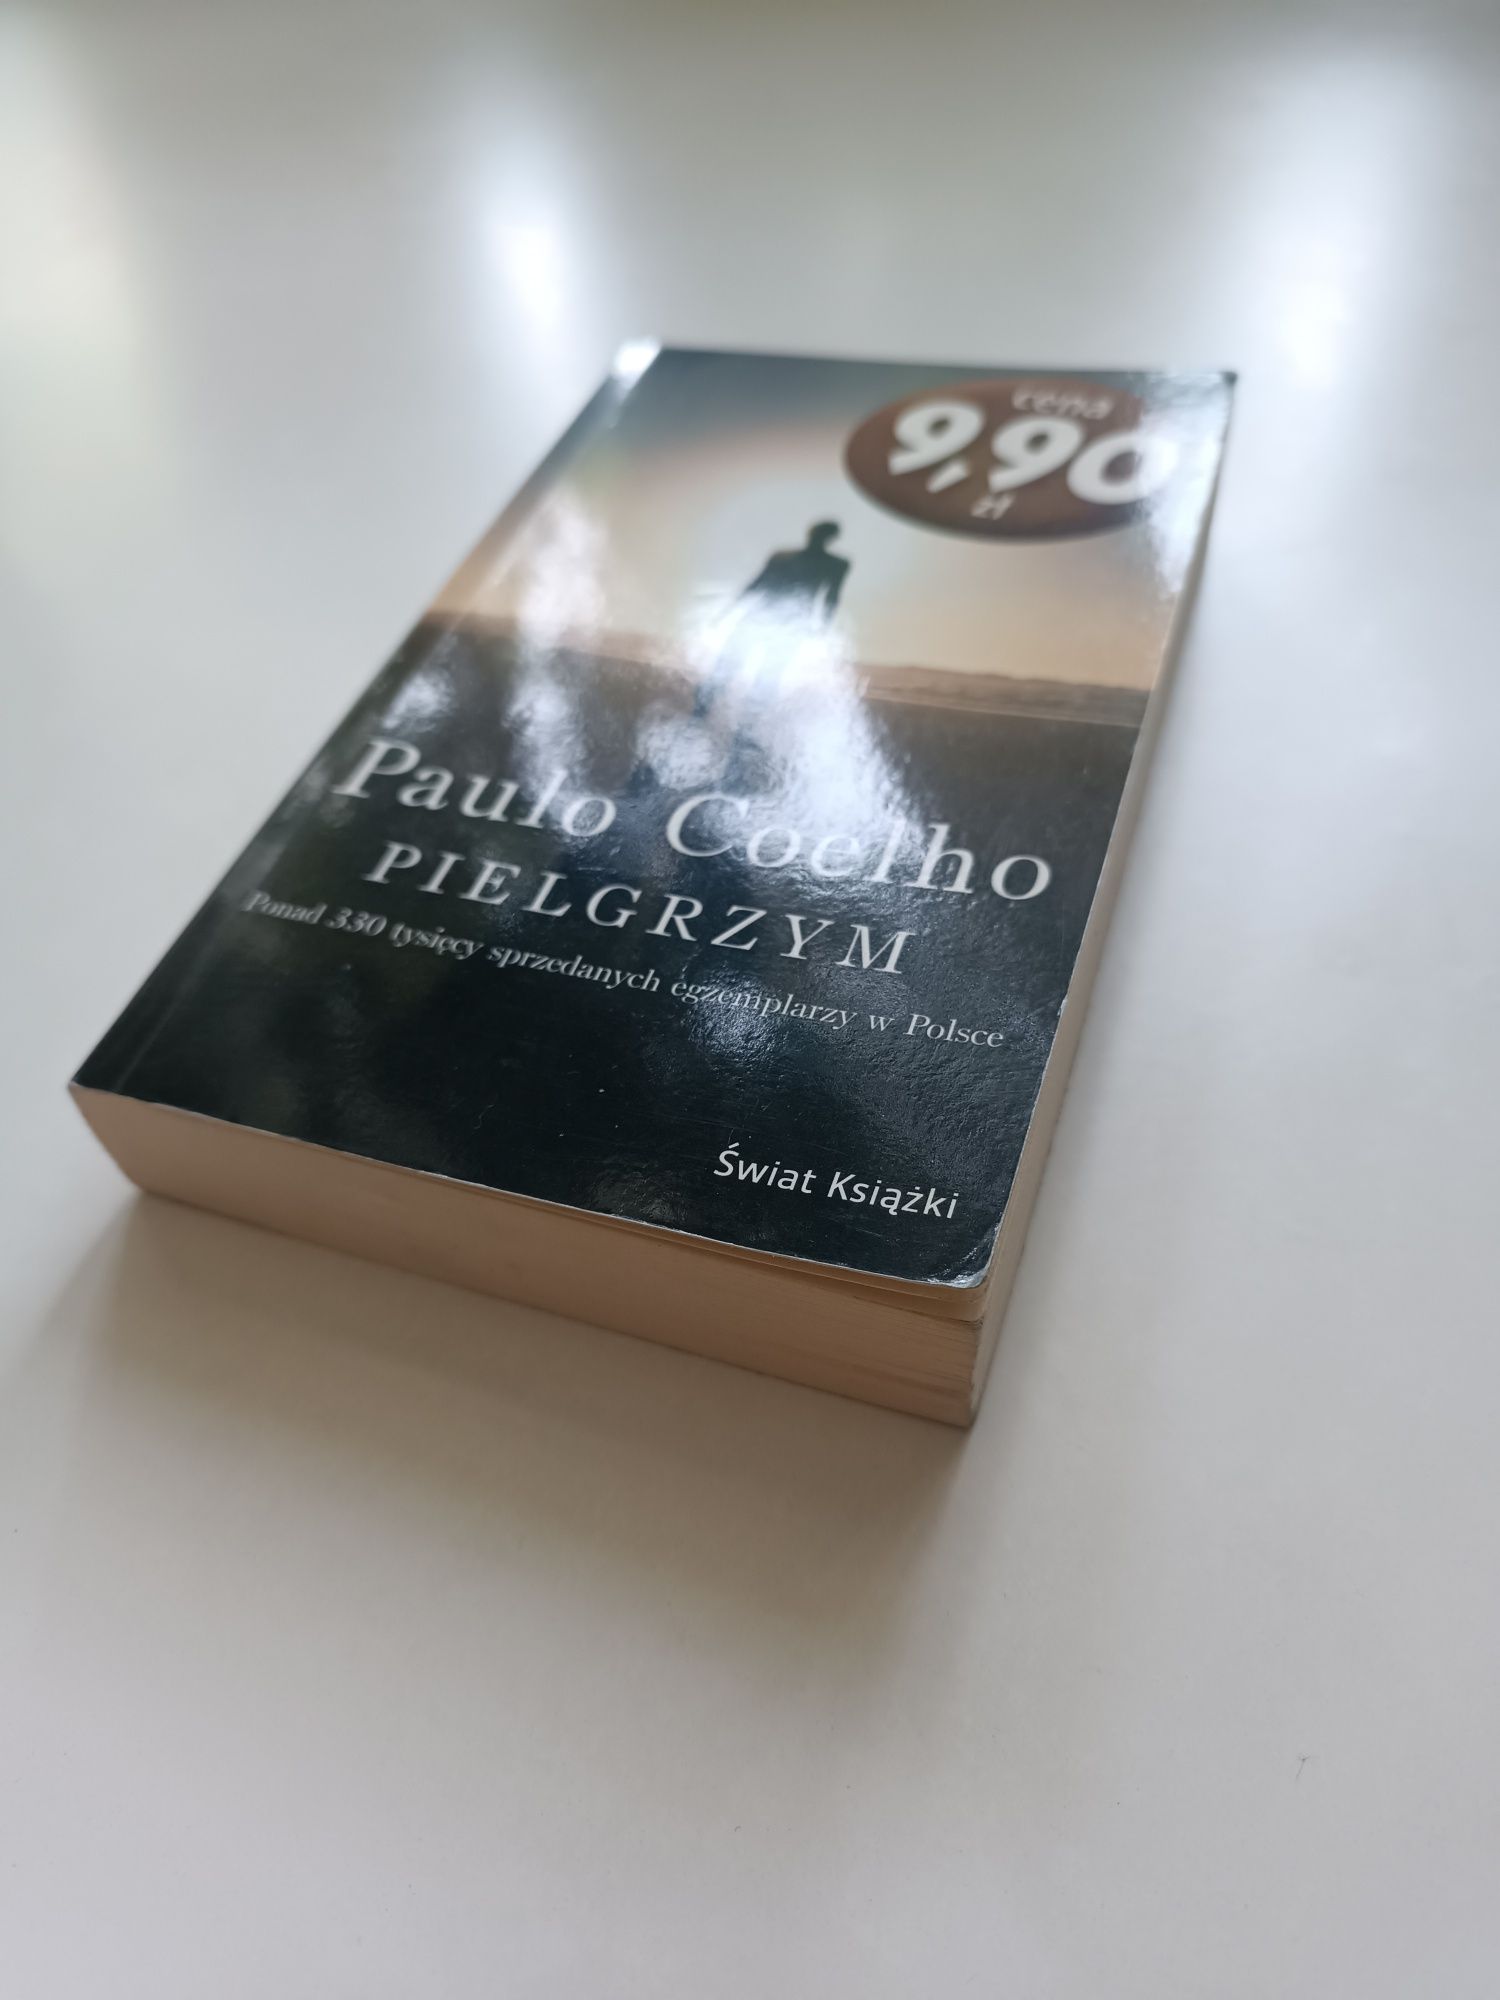 Nicholas Sparks / Paolo Coelho książki